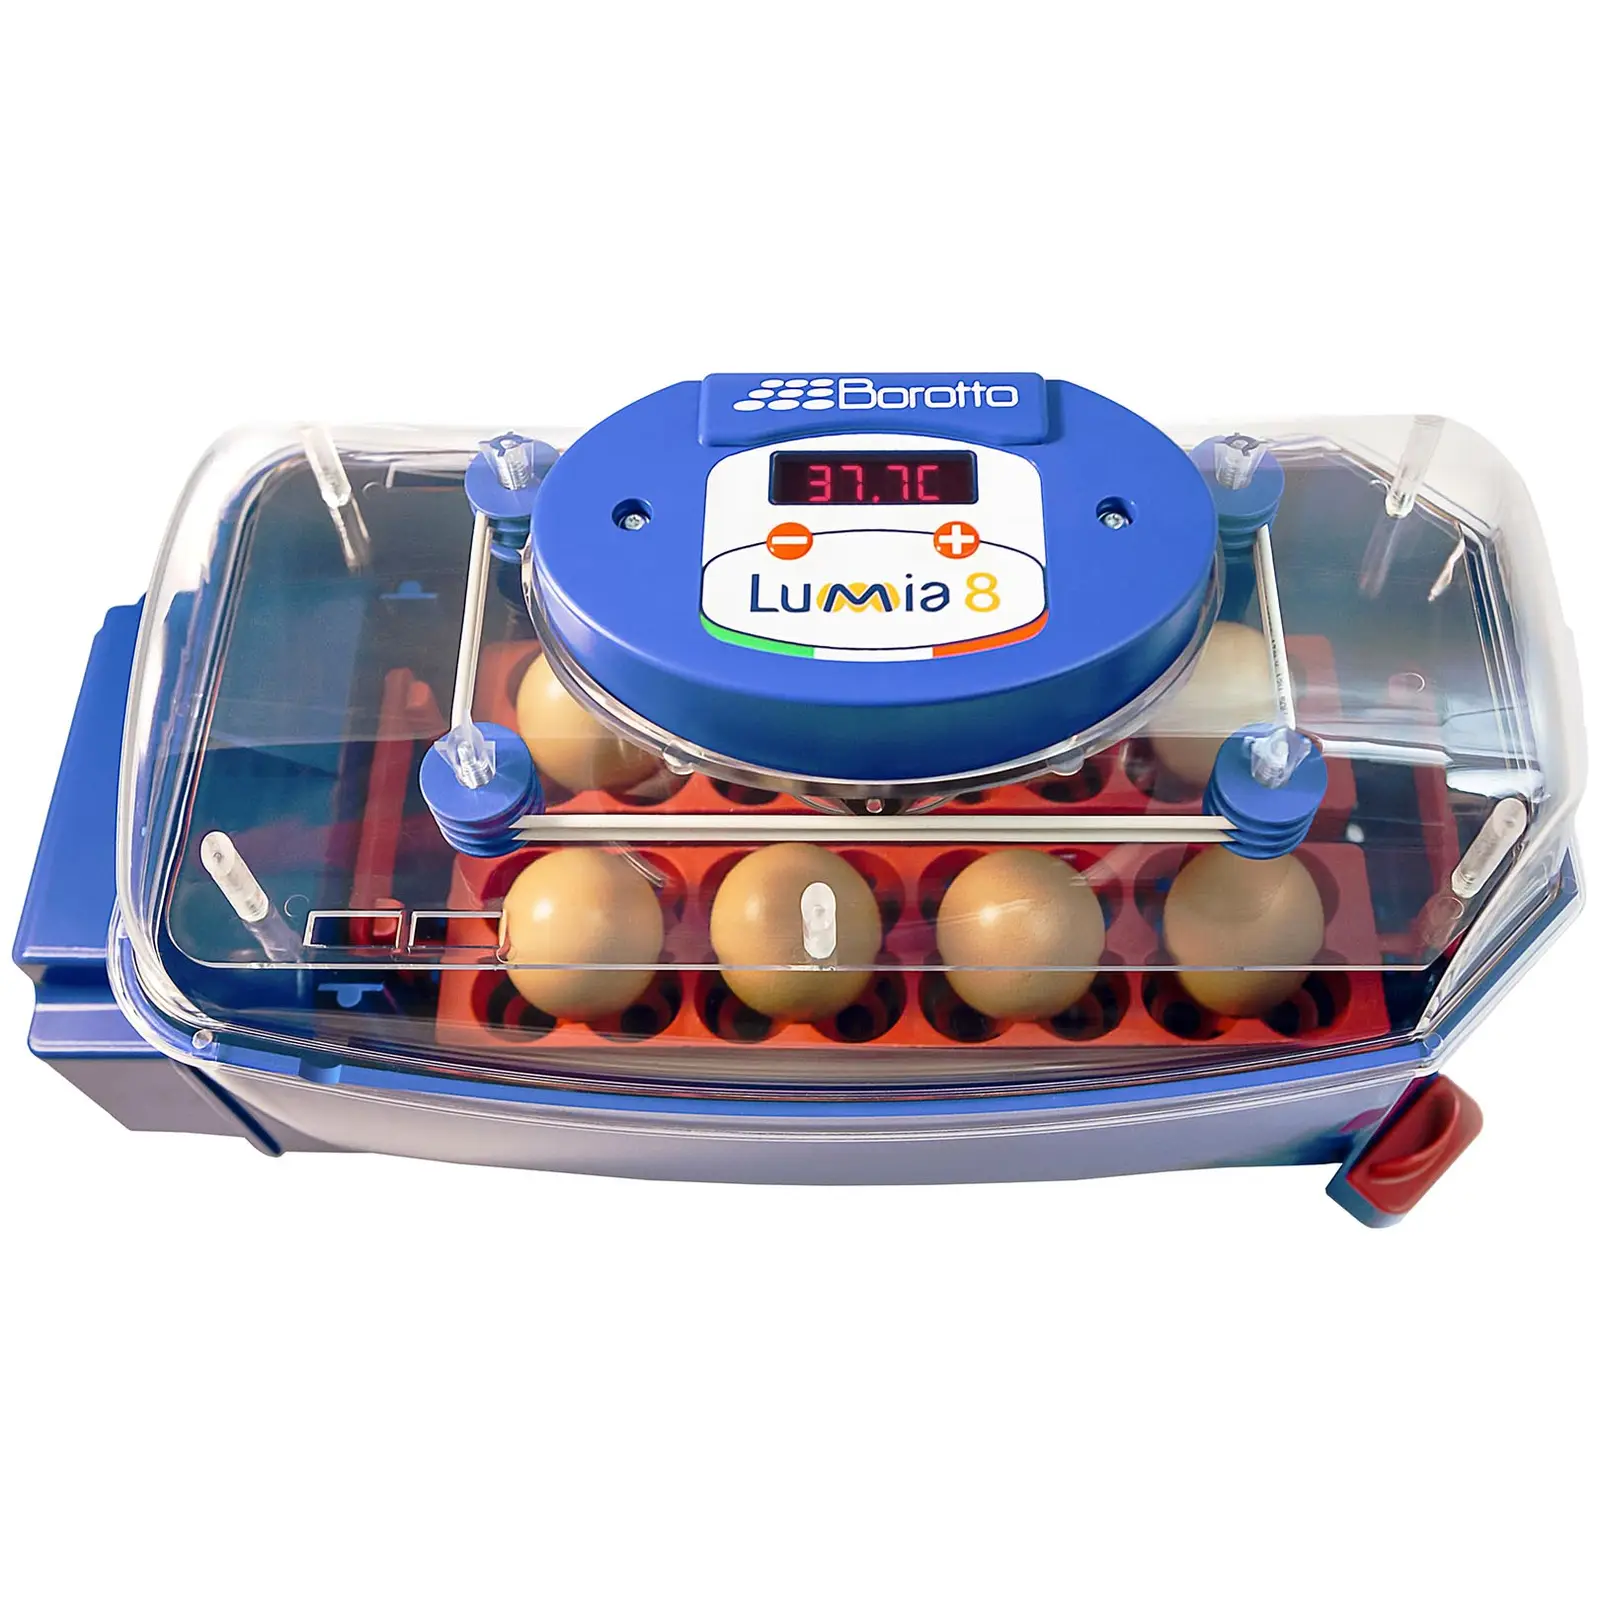 Incubator - 8 eggs - fully automatic